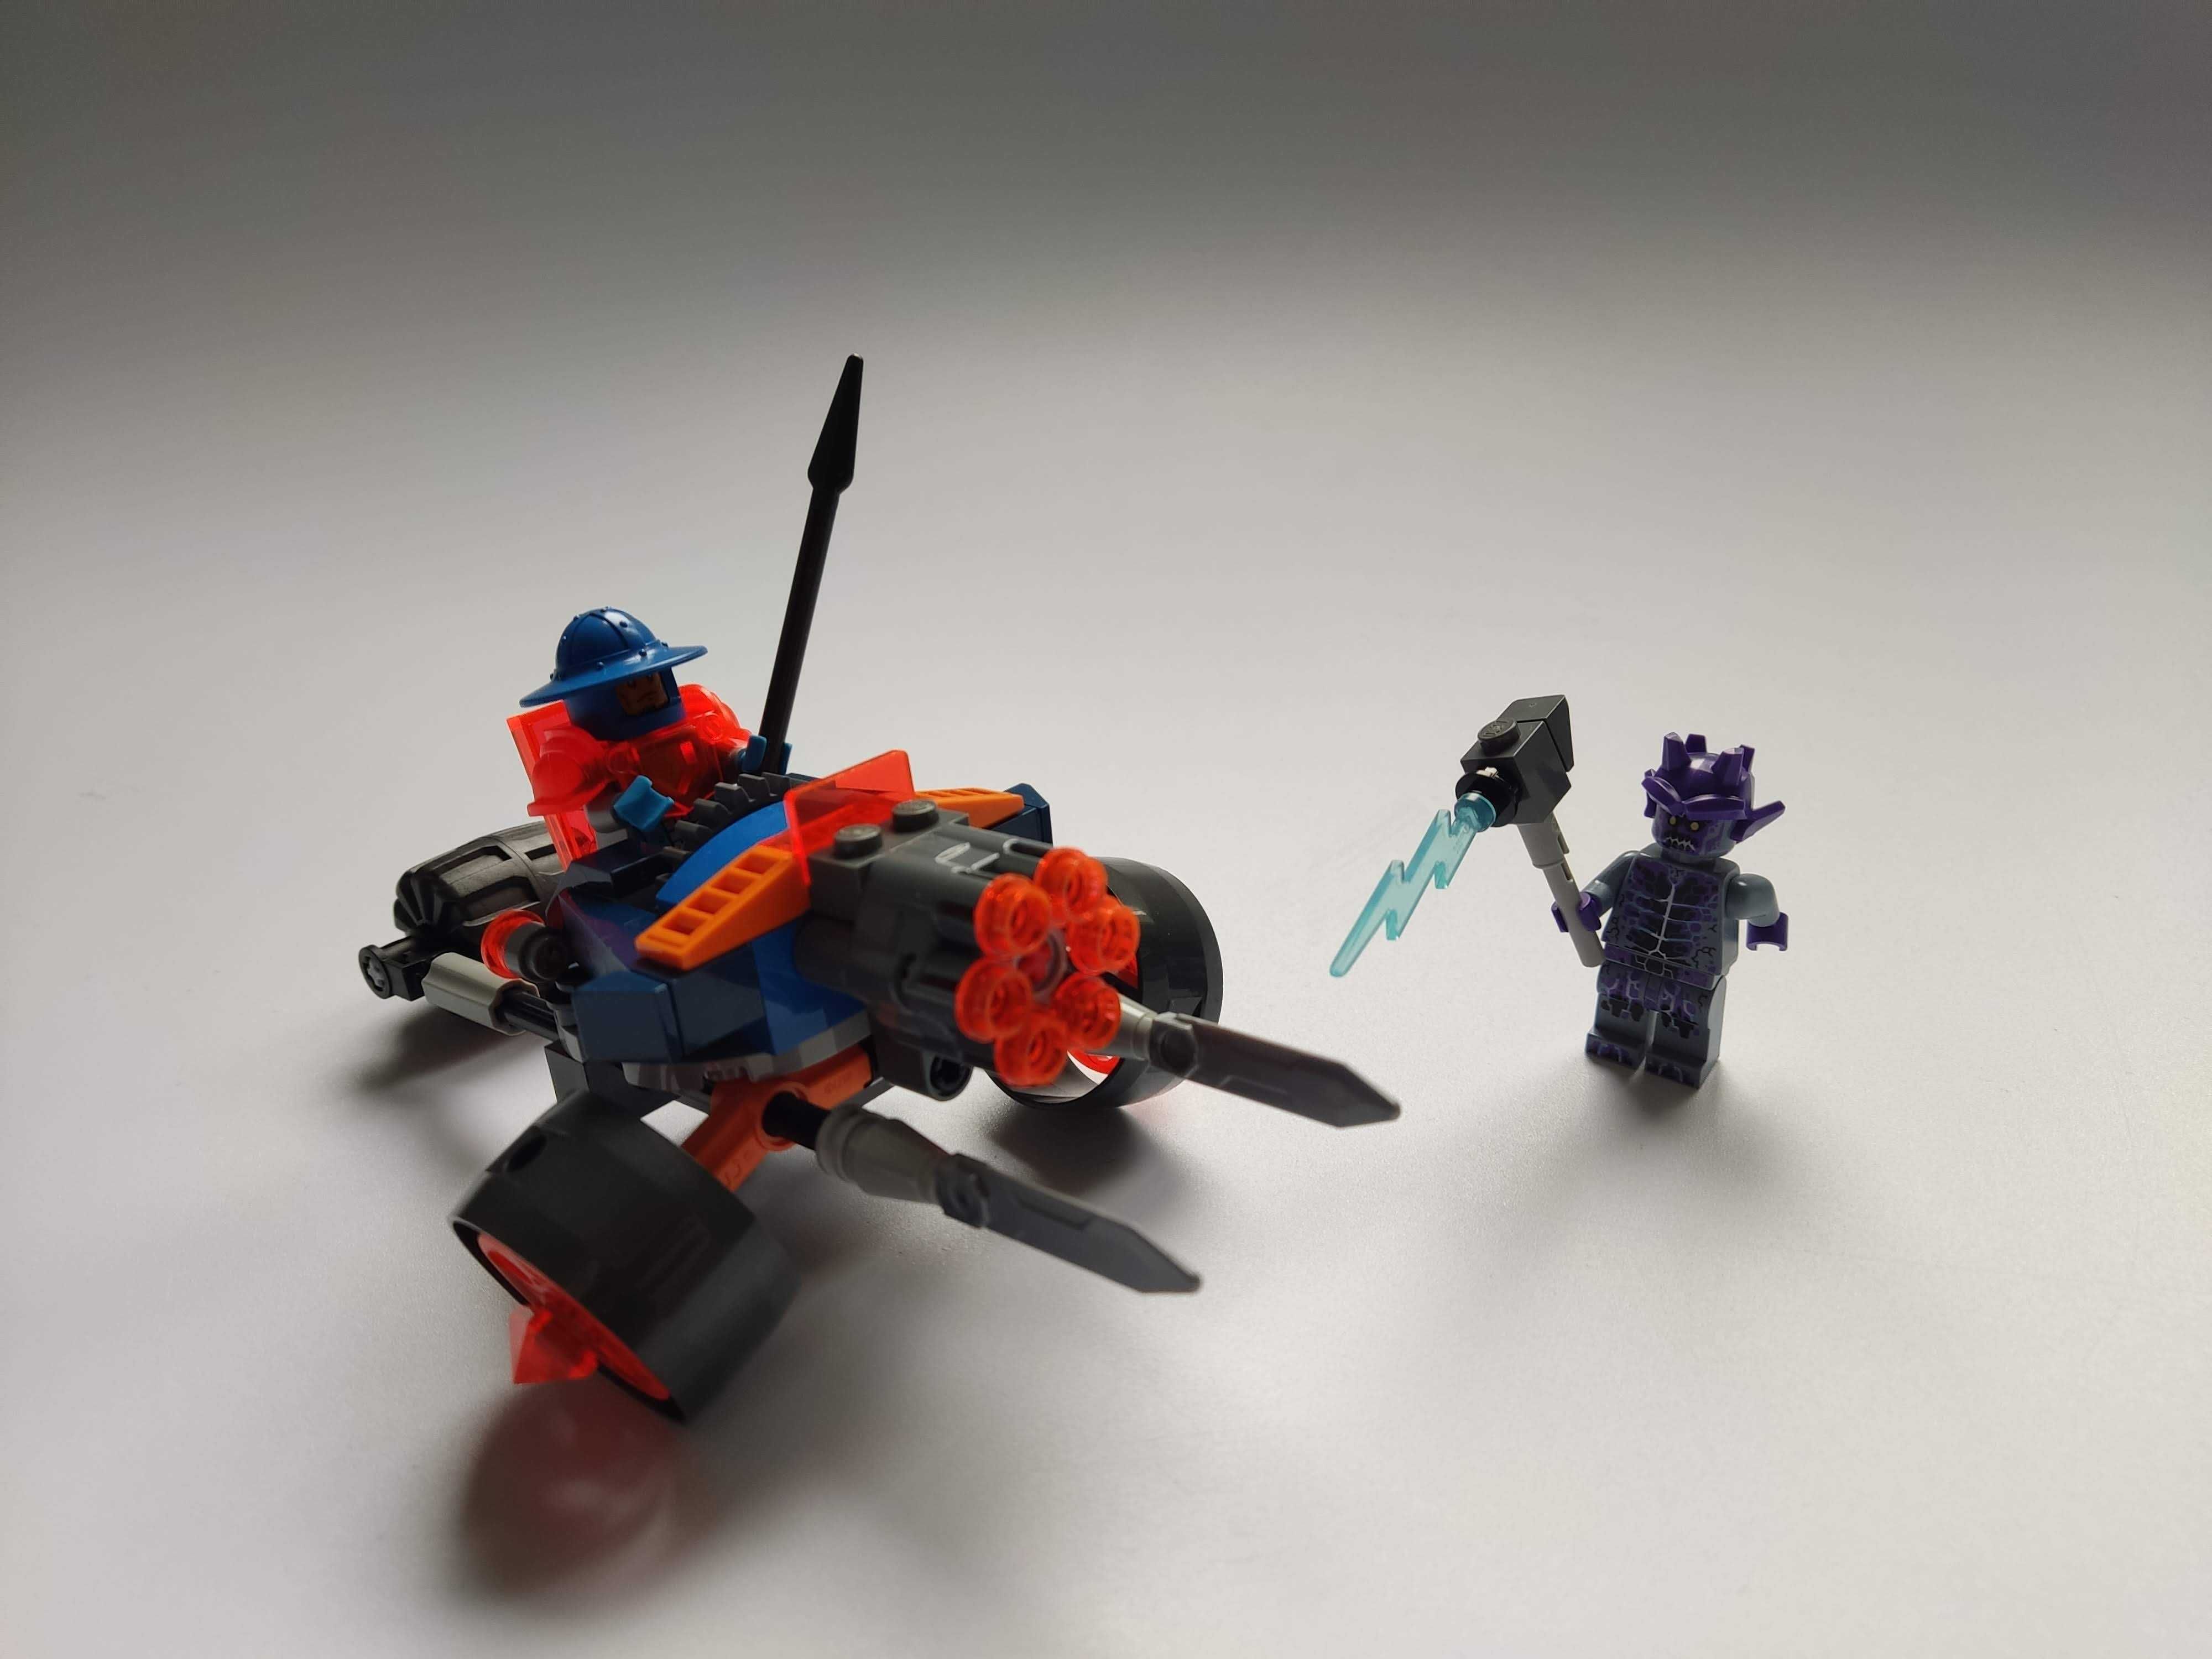 LEGO 70347 Nexo Knights - Artyleria królewskiej straży